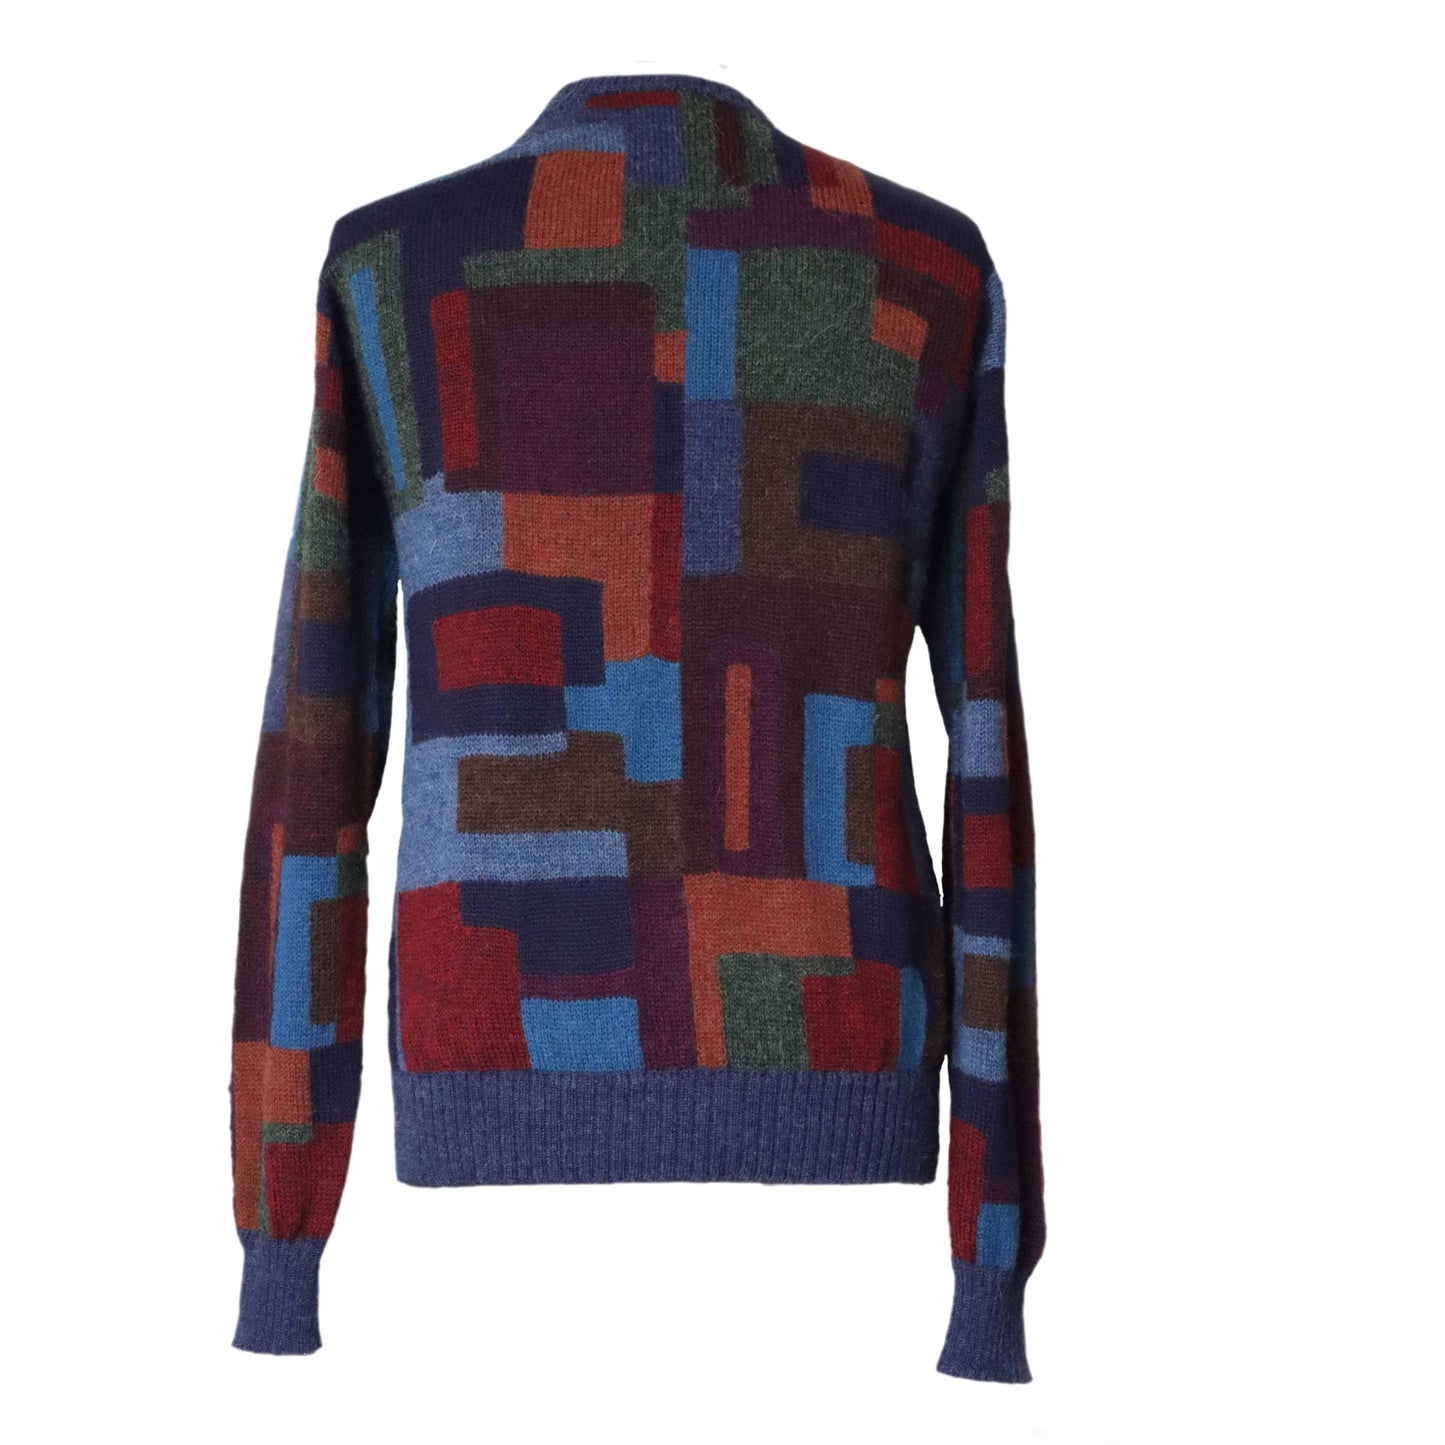 Sweater - Color box